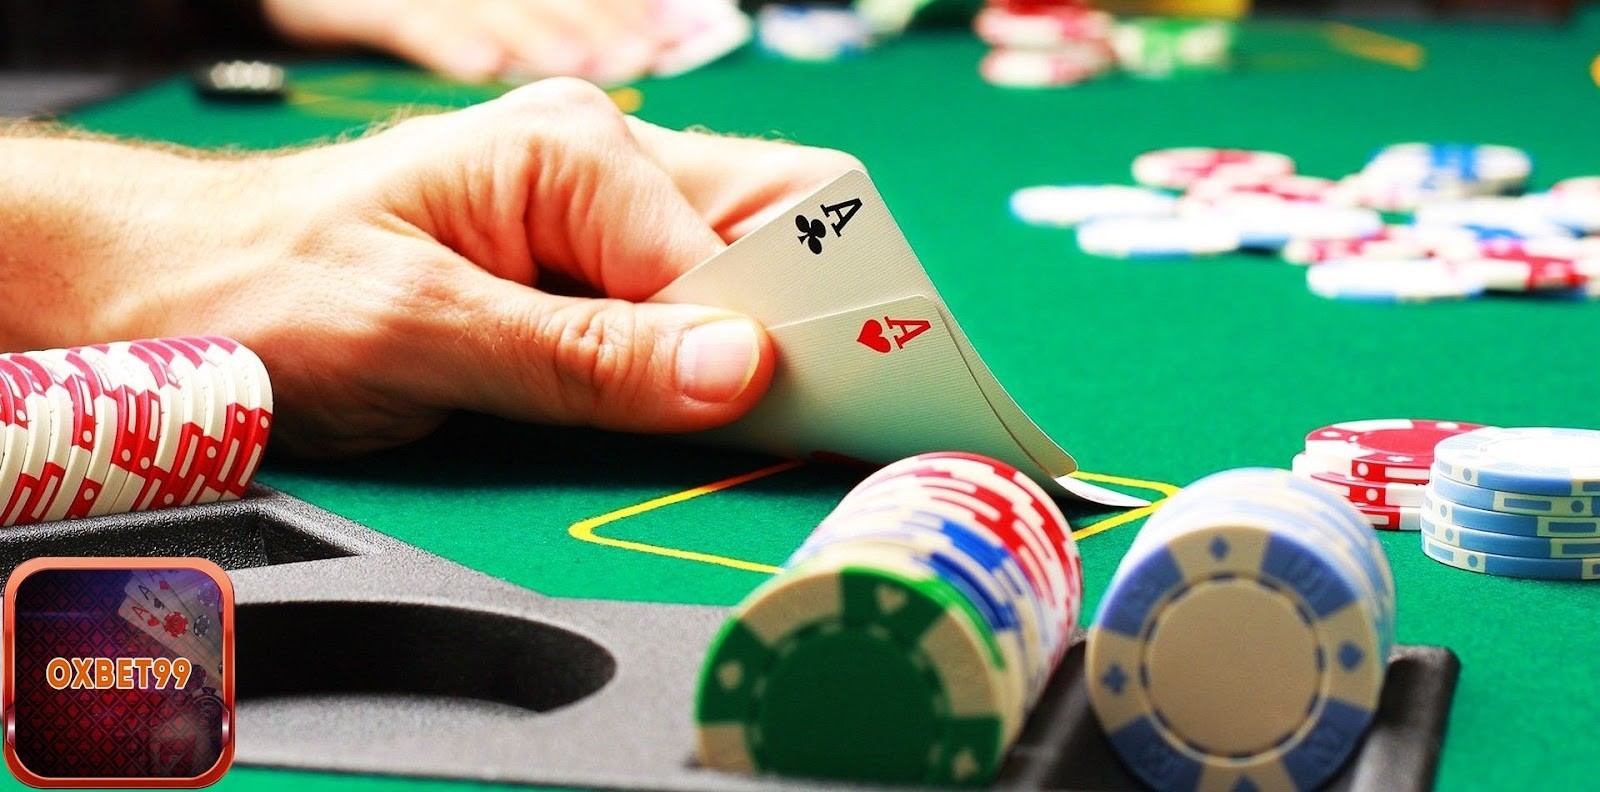 Tiêu chí phân loại người chơi Poker